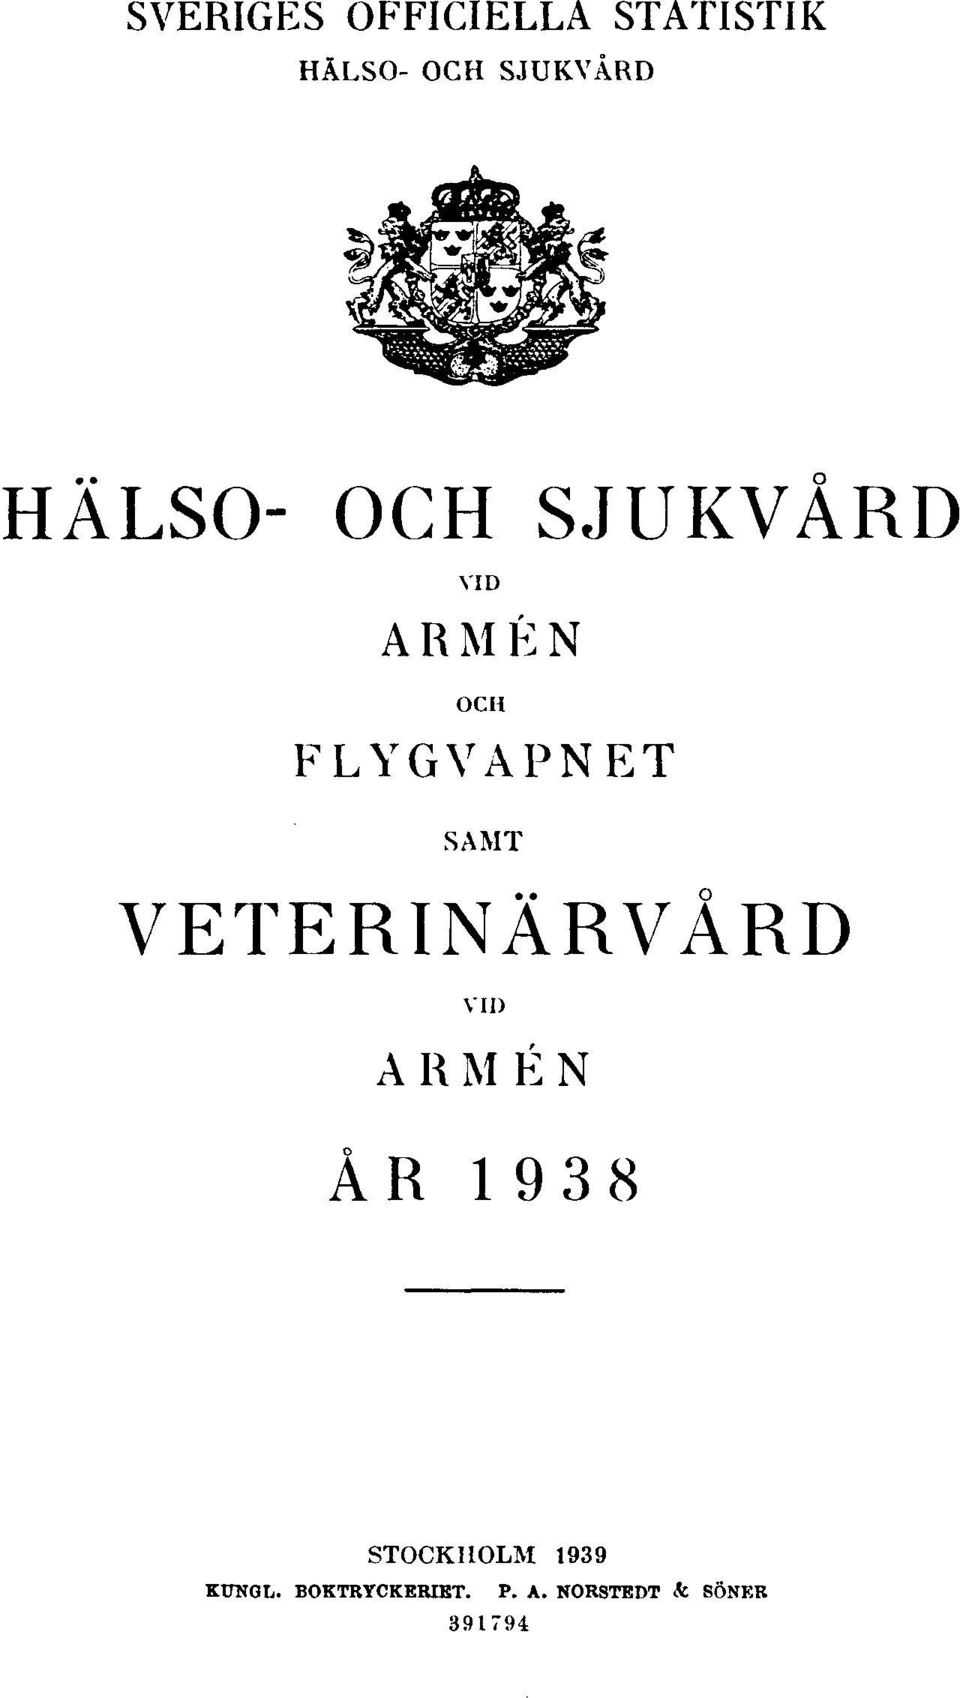 VETERINÄRVÅRD VID ARMÉN ÅR 1938 STOCKHOLM 1939